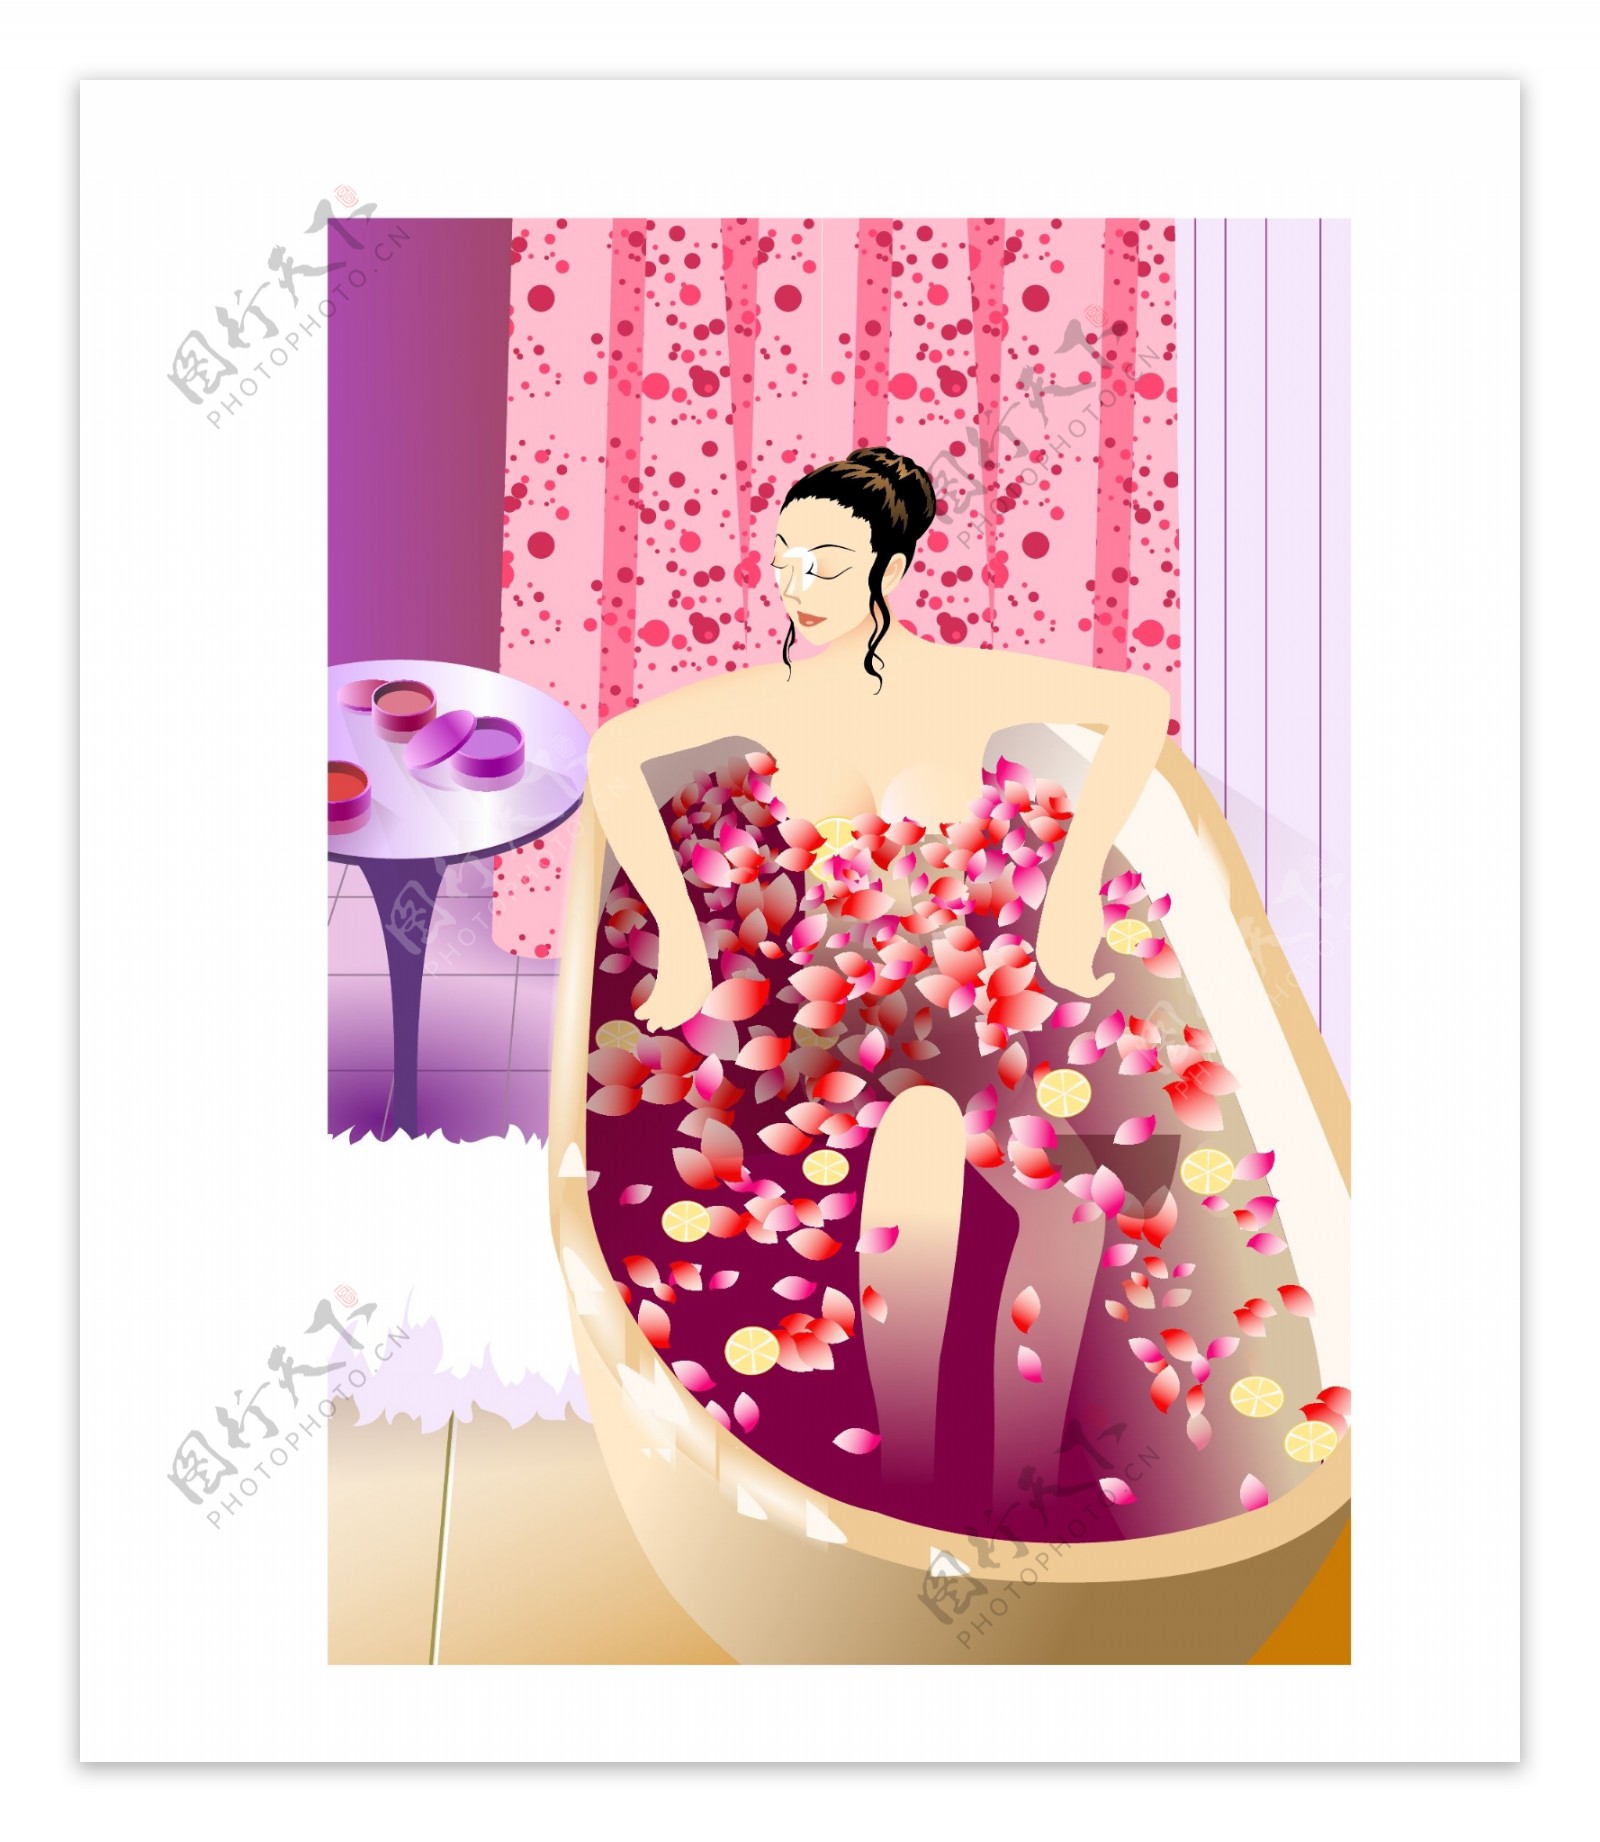 沐浴中的女性圖片素材-PSD圖片尺寸3000 × 2000px-高清圖案401101494-zh.lovepik.com